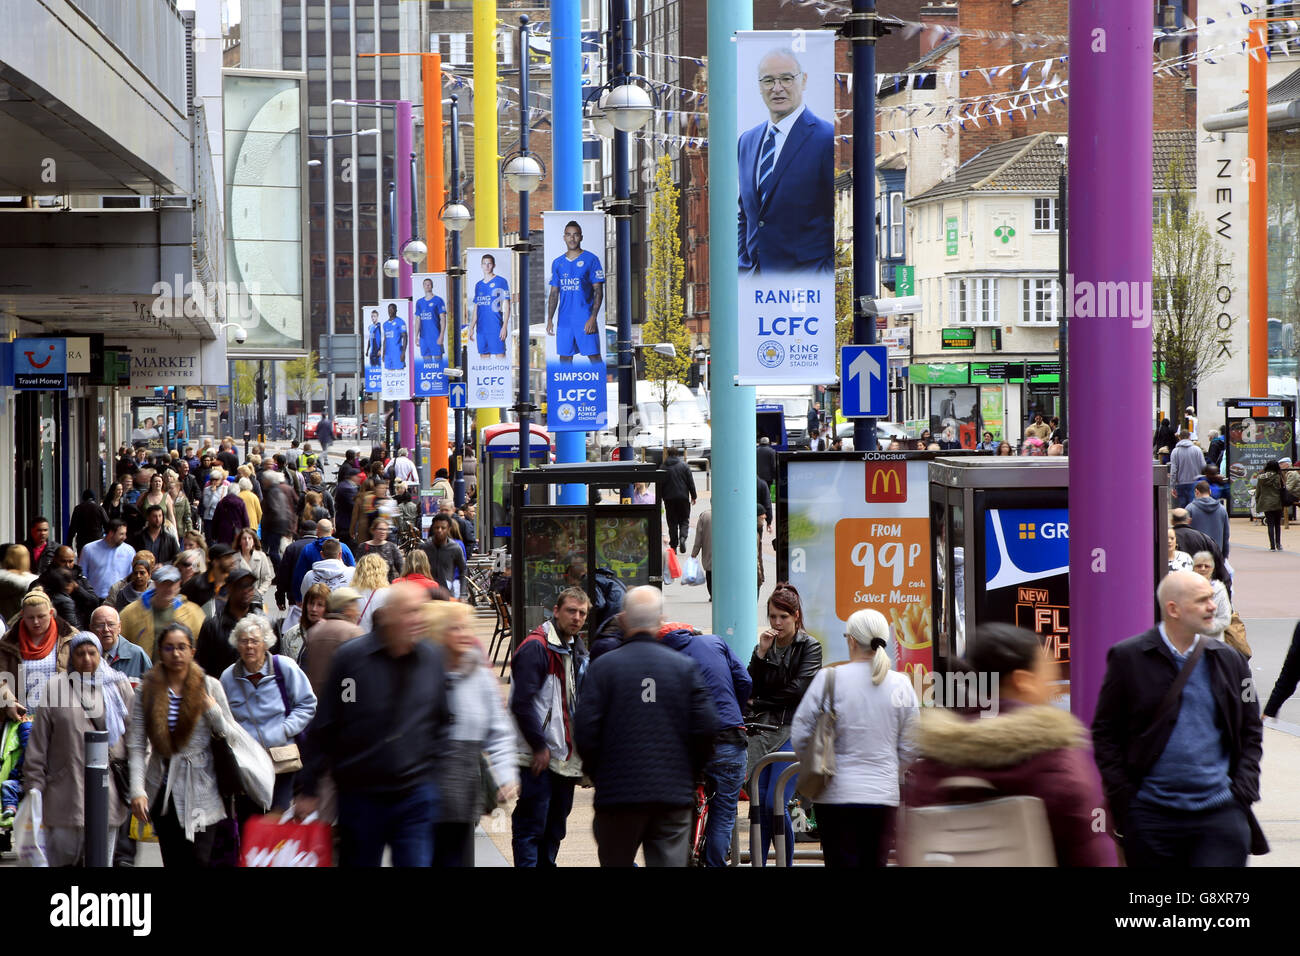 Des bannières géantes mettant en vedette le directeur de la ville de Leciester, Claudio Ranieri, et son équipe, photographiés dans le centre-ville de Leicester. Banque D'Images